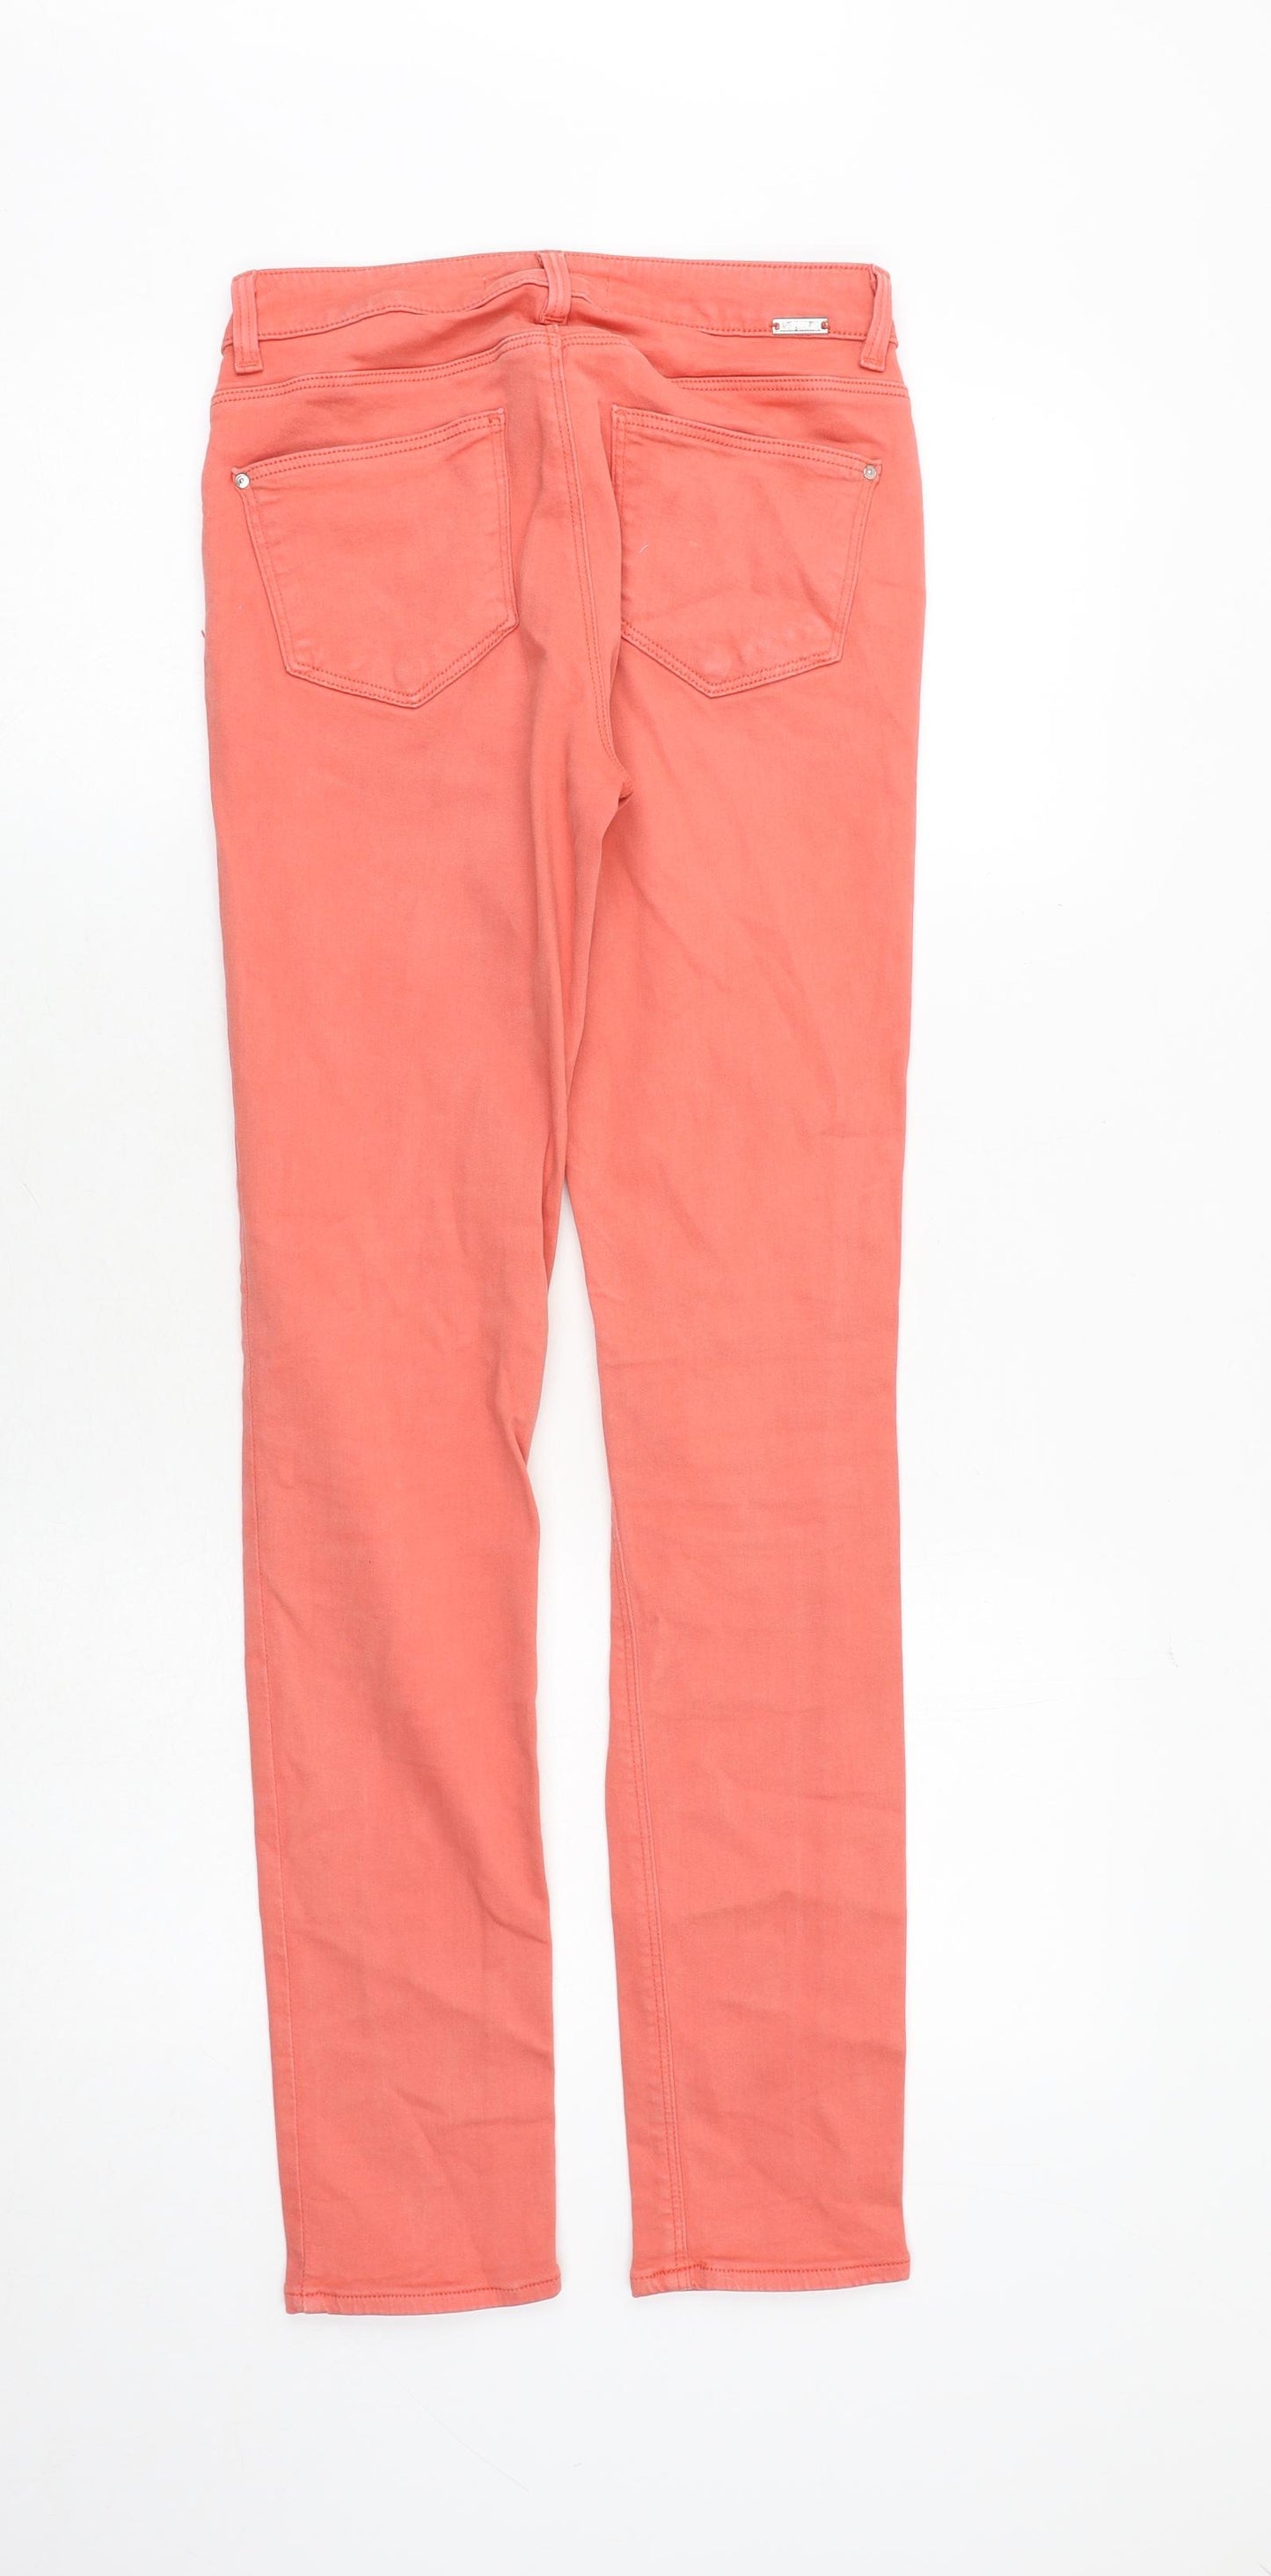 Zara Womens Pink Cotton Skinny Jeans Size 8 Slim Zip